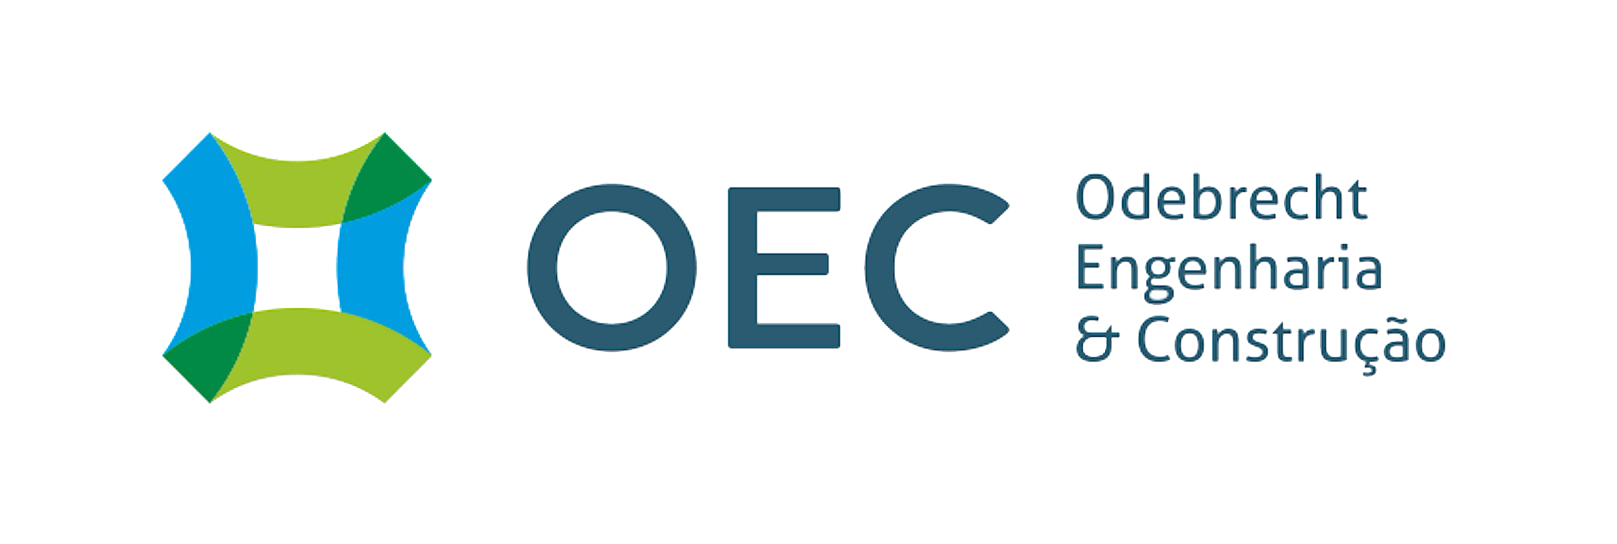 O logo da Odebrecht Engenharia